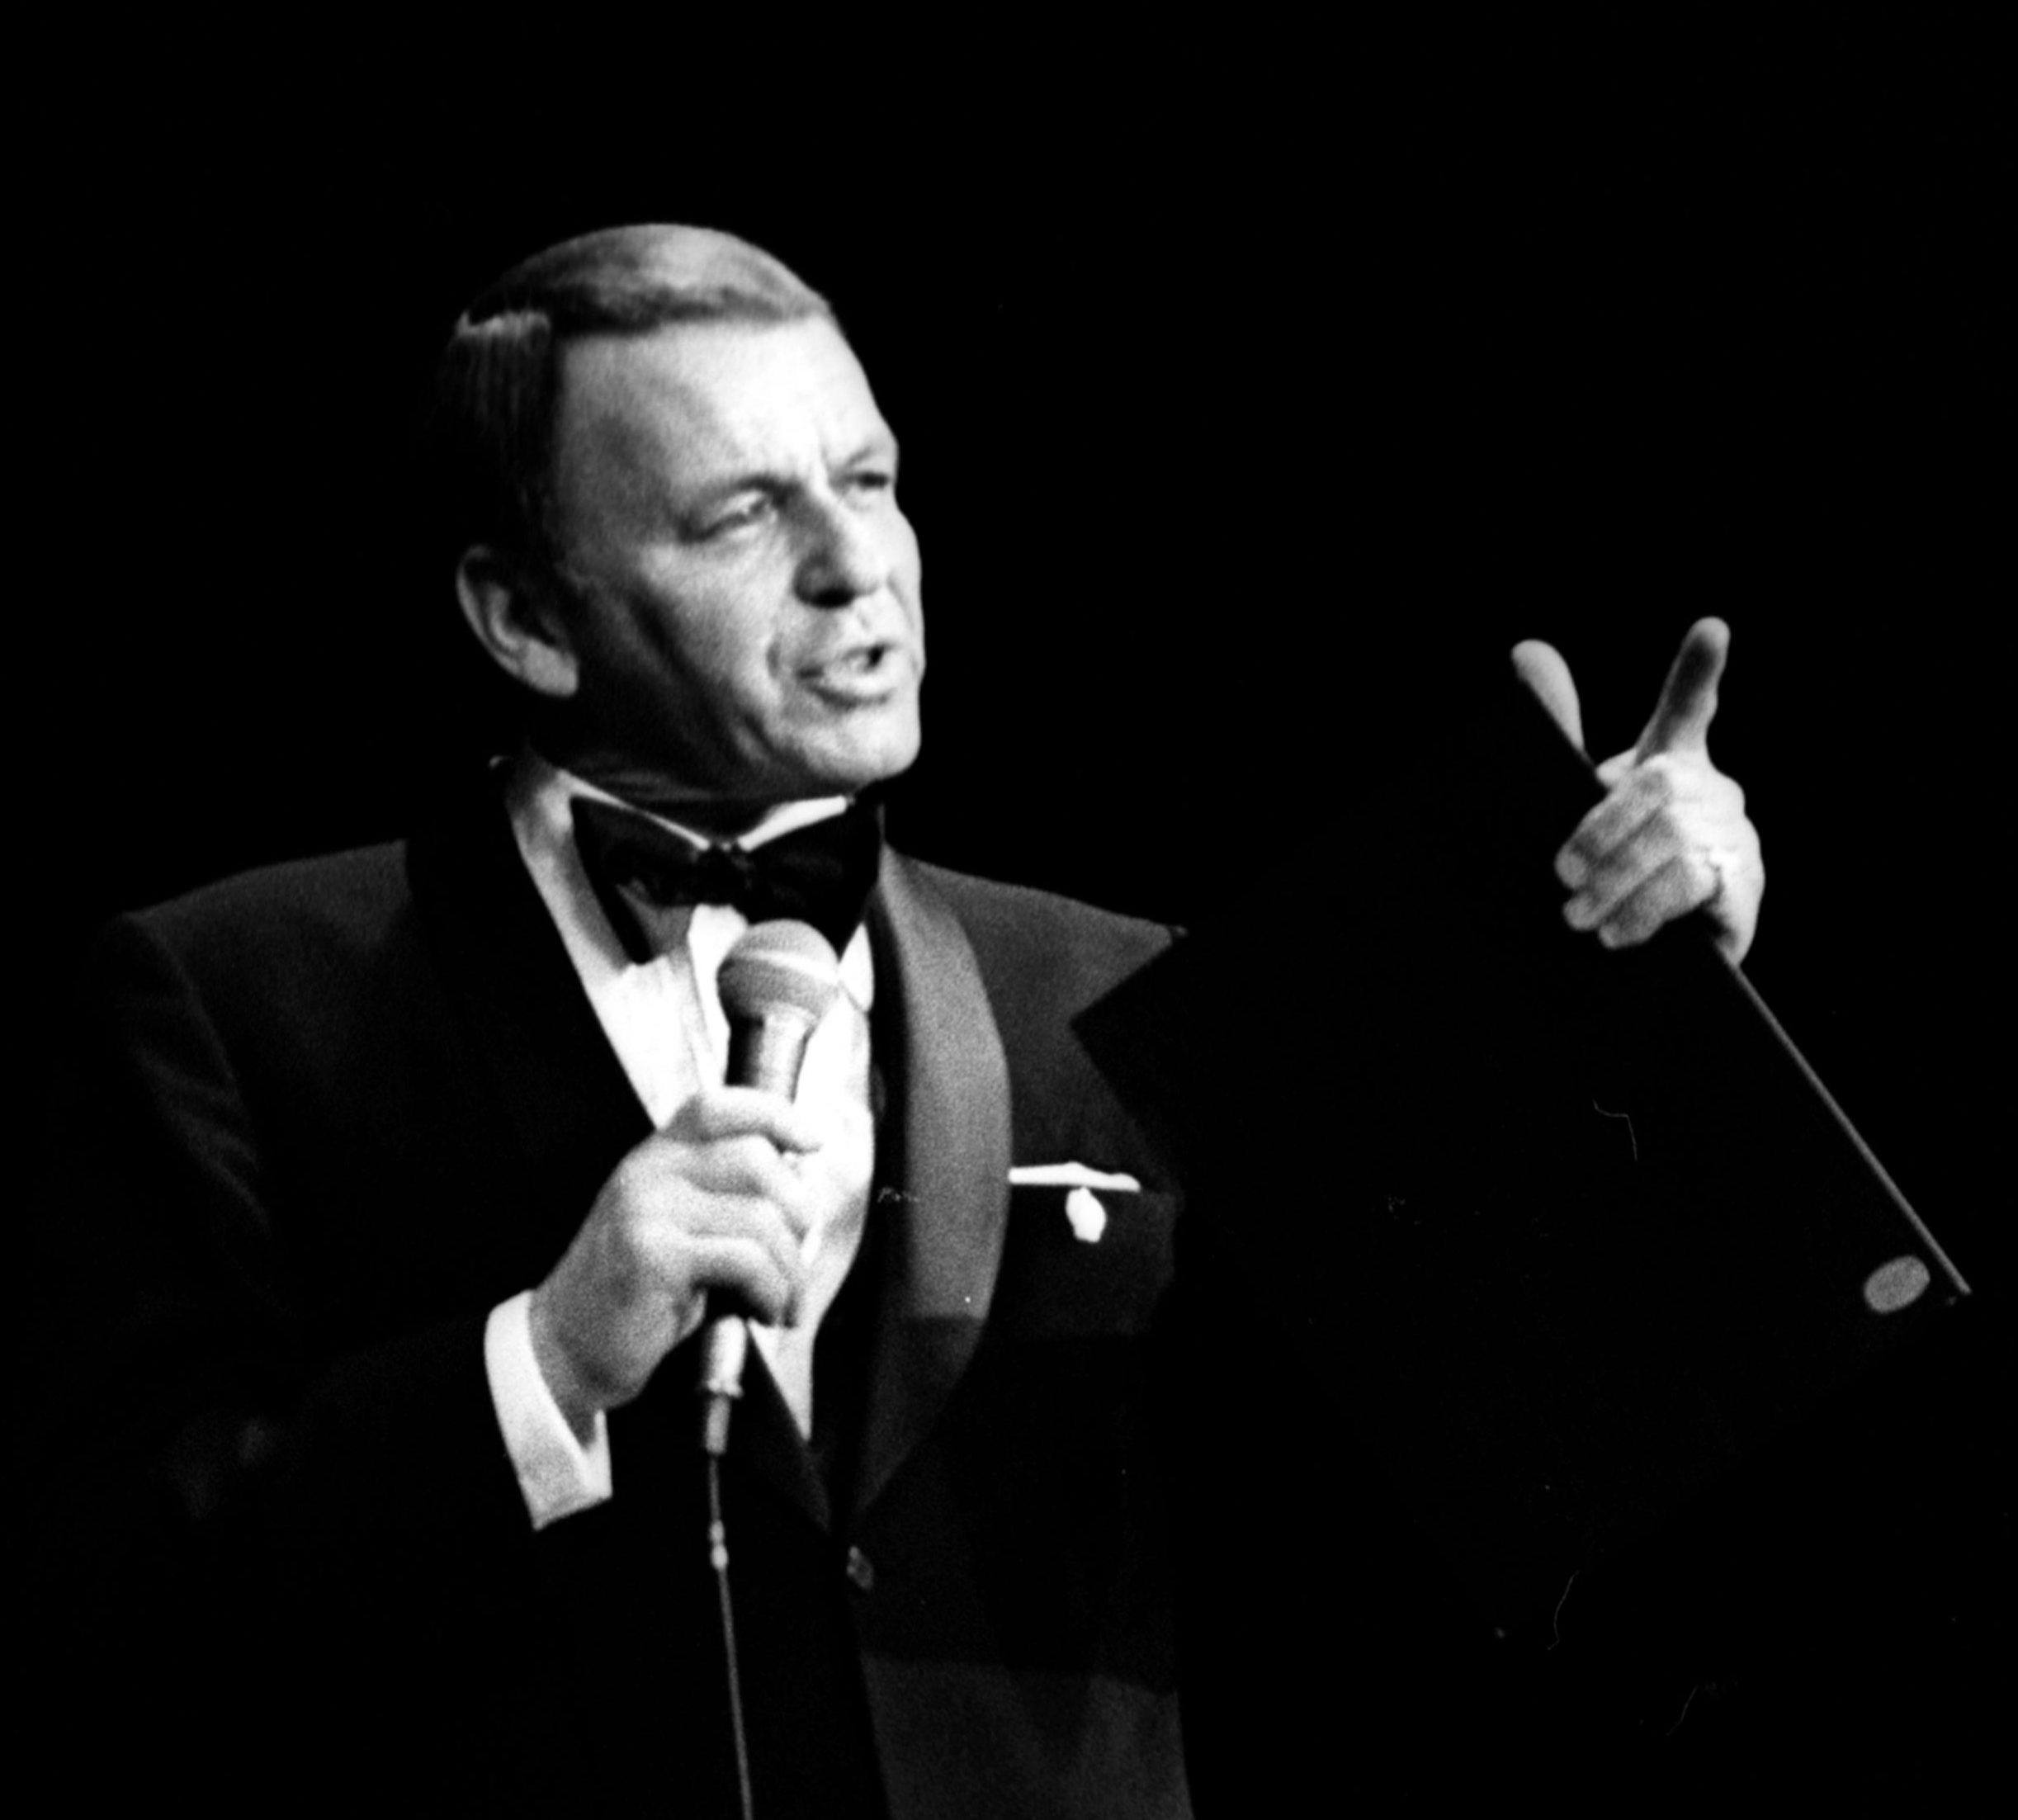 Er feiert ein Comeback wie der ausgelaugte Frank Sinatra – und auf seine Art